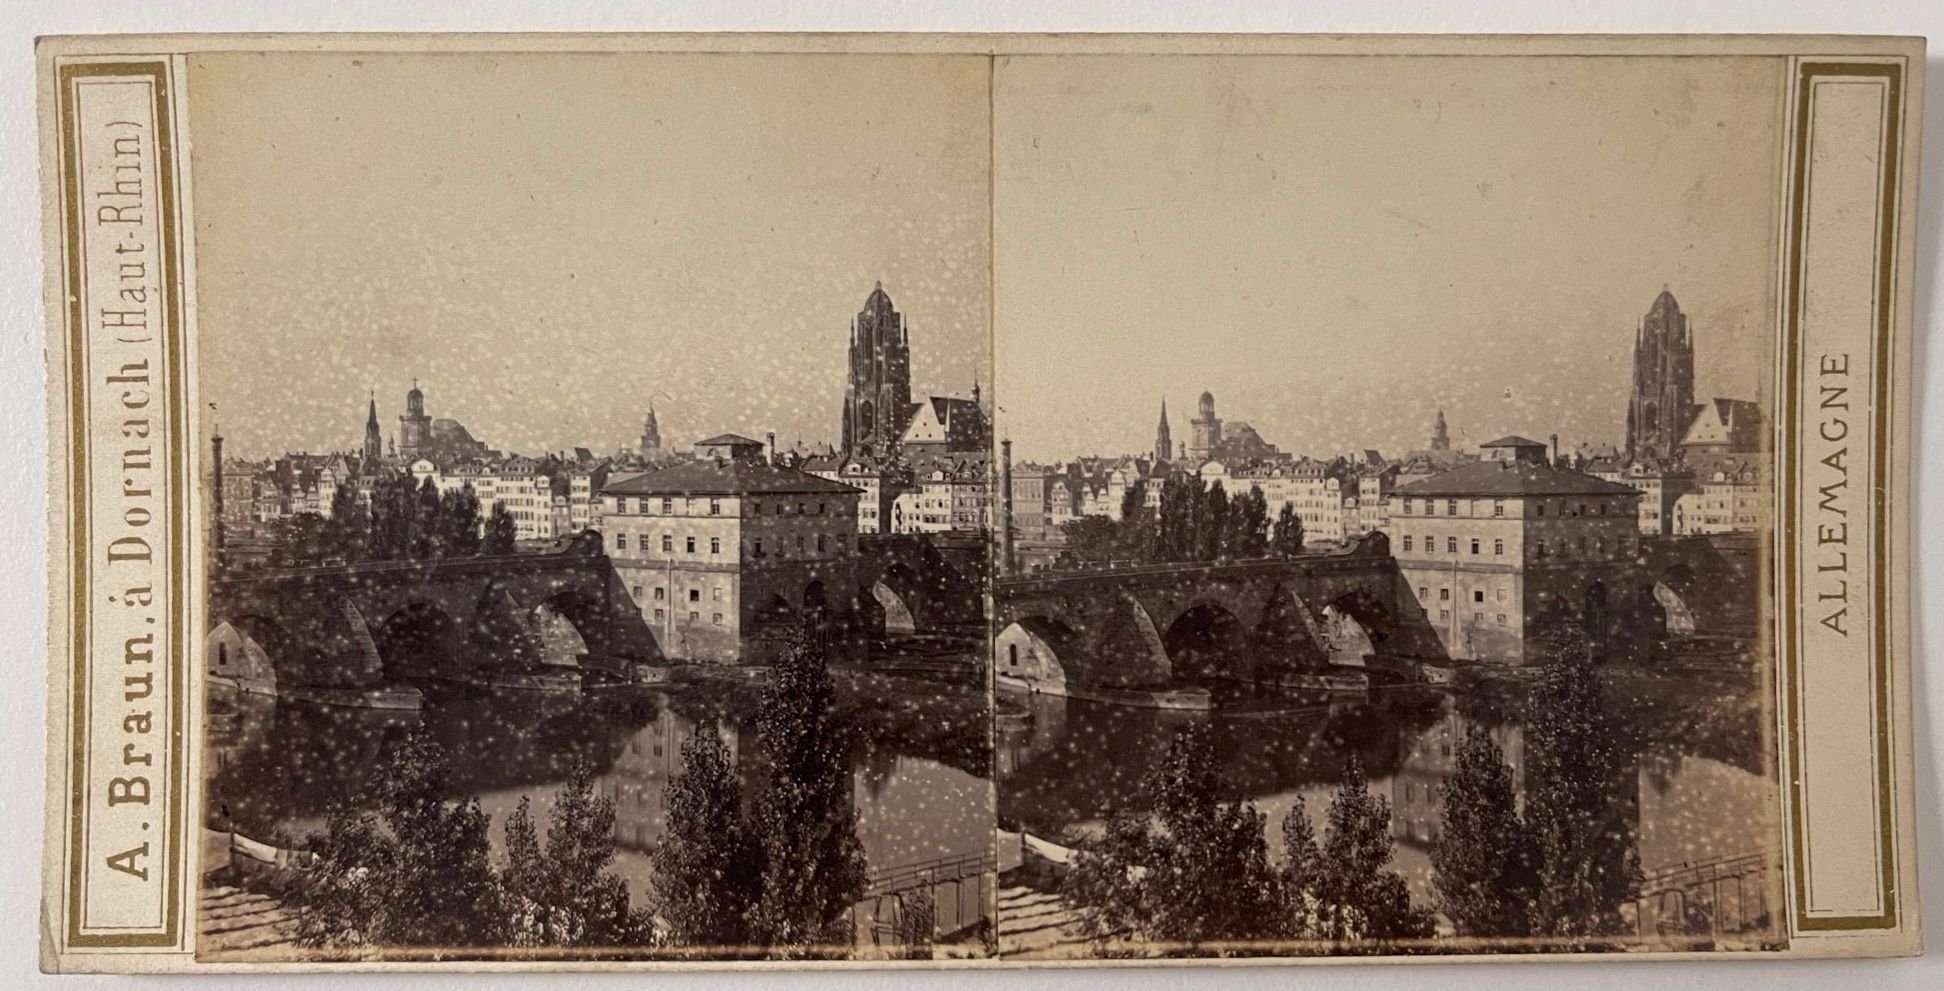 Stereobild, Adolphe Braun, Frankfurt a. M., No. 3525, Brücke von Sachsenhausen und Dom, ca. 1865. (Taunus-Rhein-Main - Regionalgeschichtliche Sammlung Dr. Stefan Naas CC BY-NC-SA)